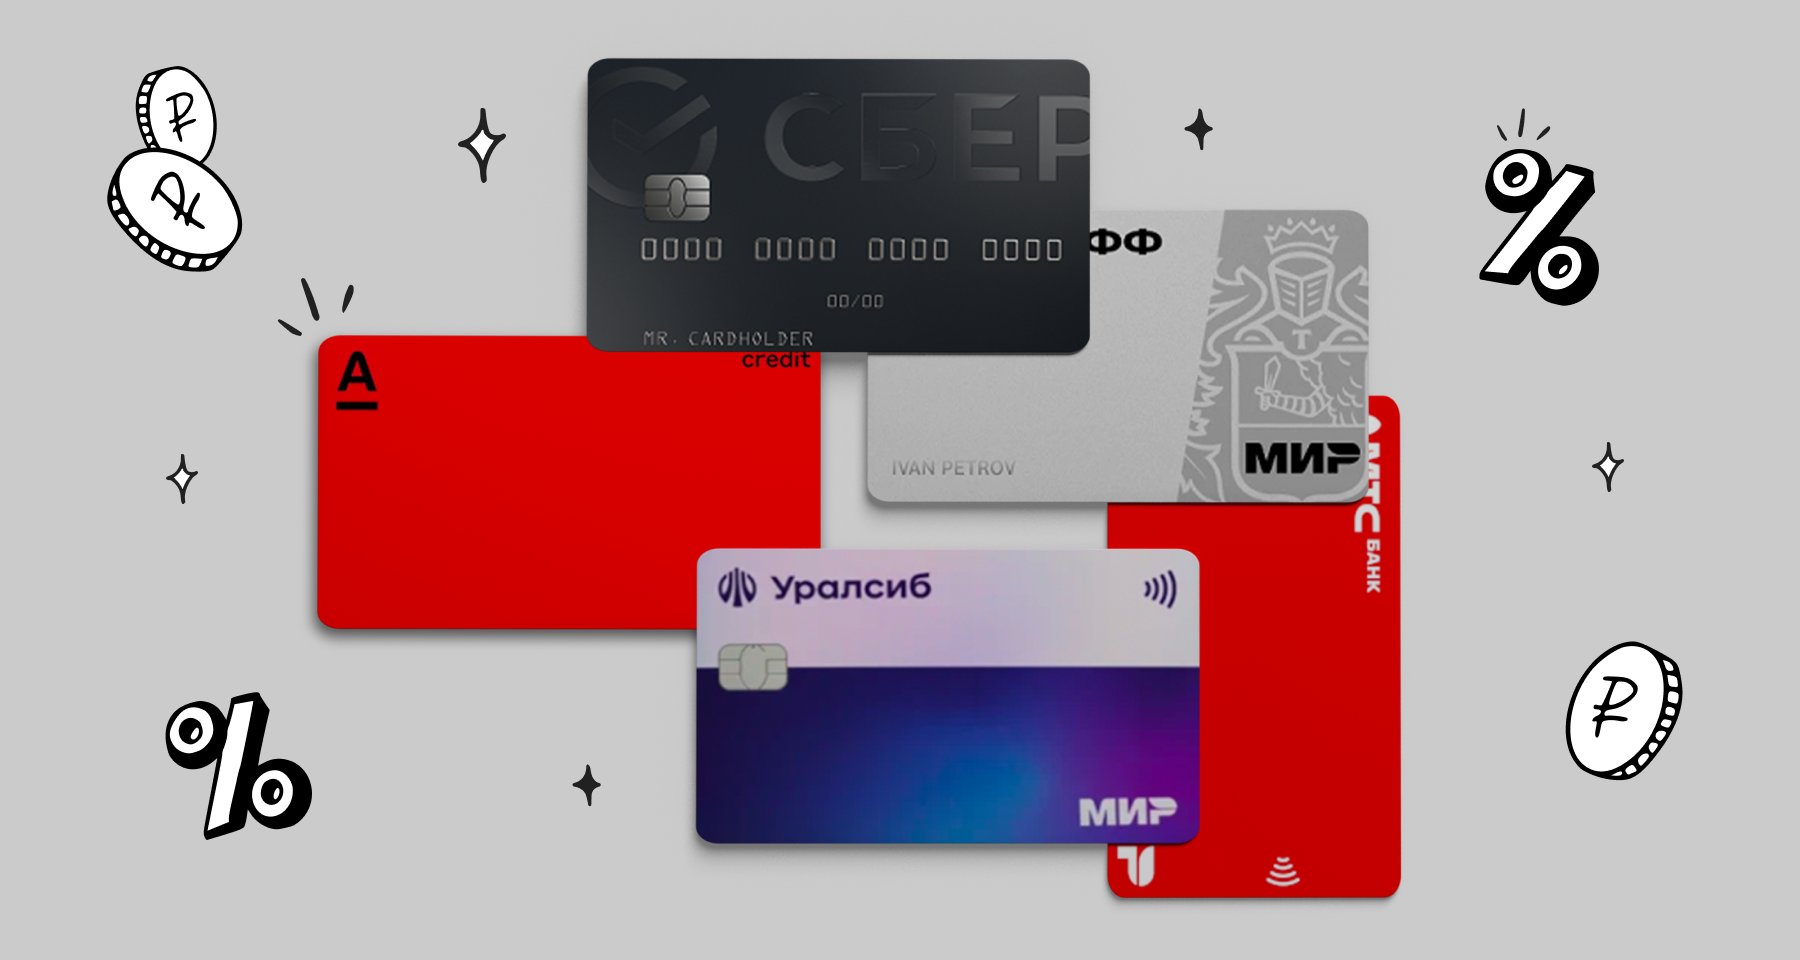 Пять кредитных карт ноября по версии пользователей Банки.ру